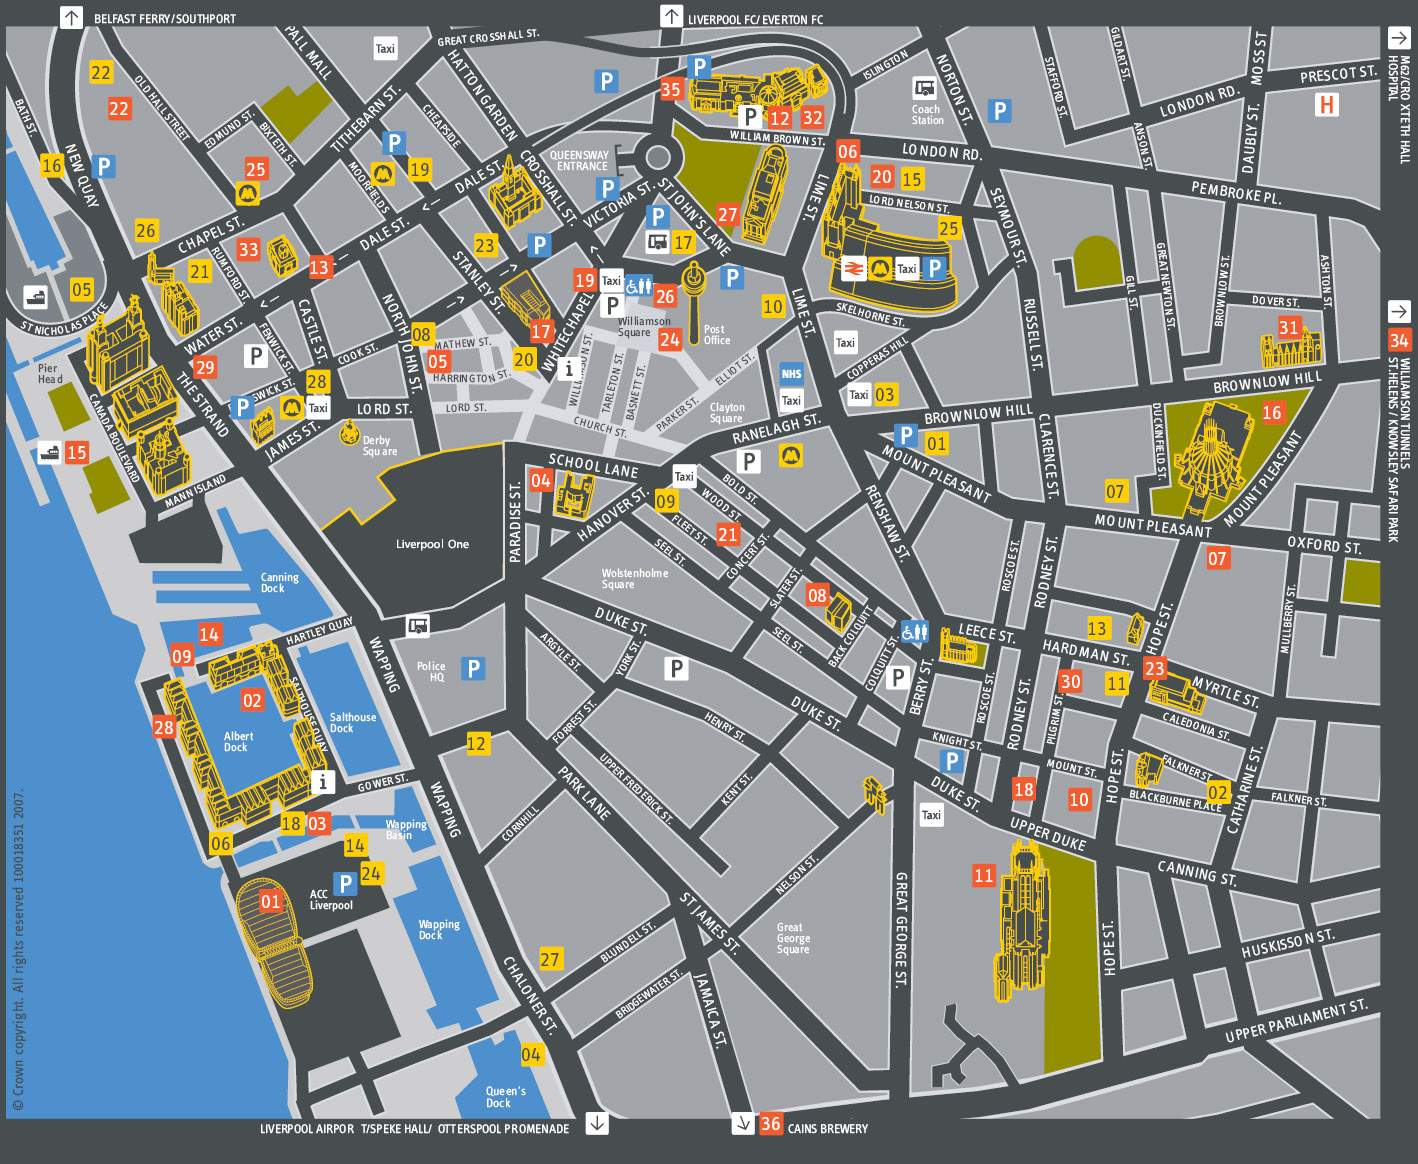 Stadtplan von Liverpool | Detaillierte gedruckte Karten von Liverpool, Grossbritannien ...1418 x 1164